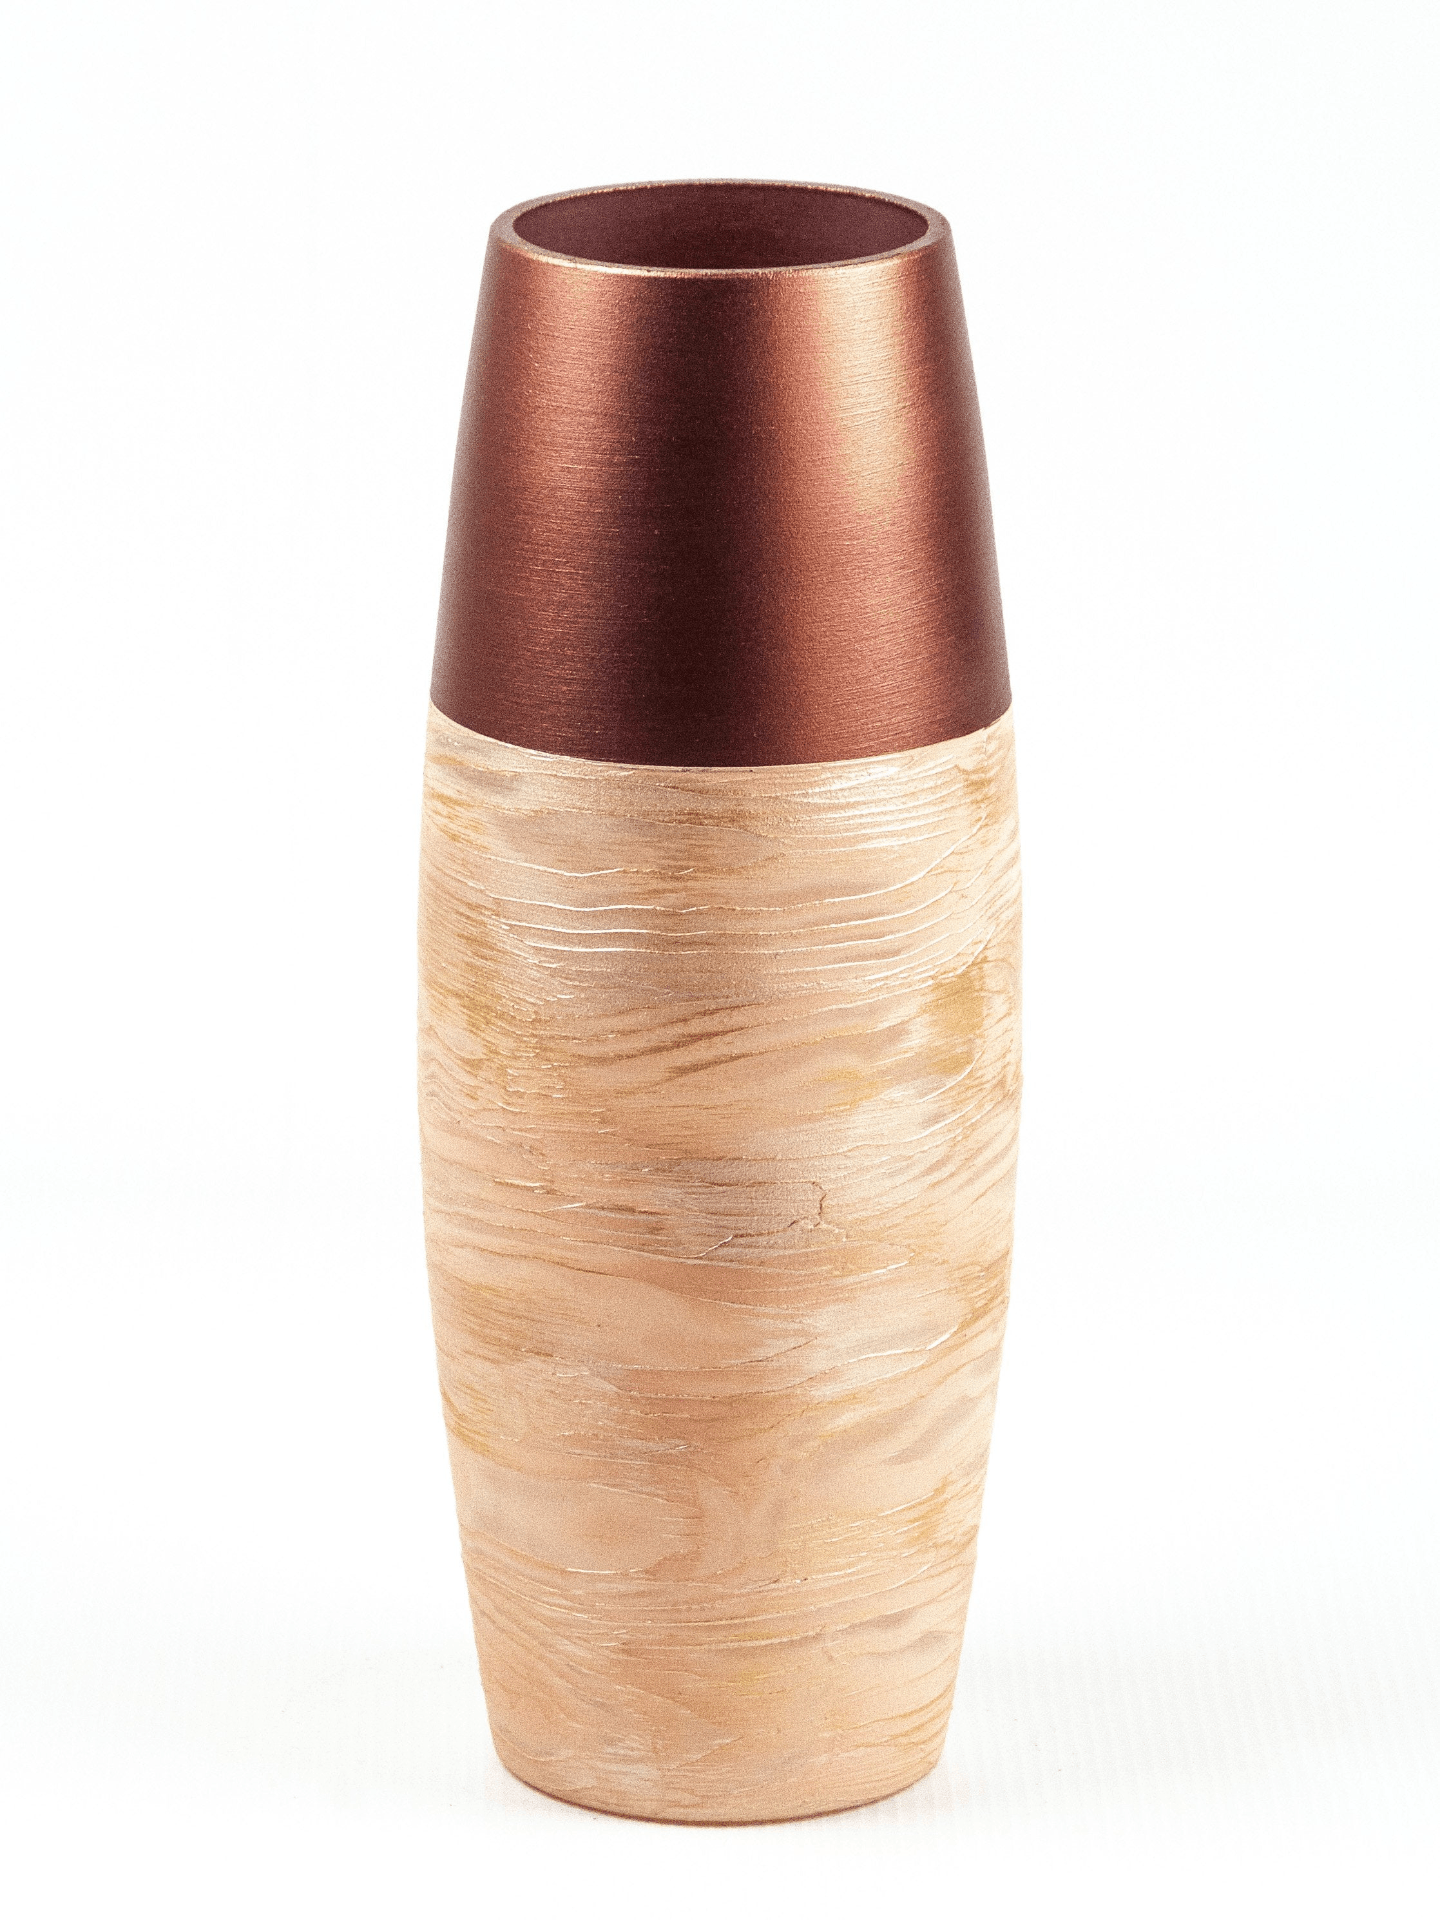 Handpainted Glass Vase for Flowers | Copper Oval Vase | Interior Design Home Decor | Table vase | 7736/300/sh177  